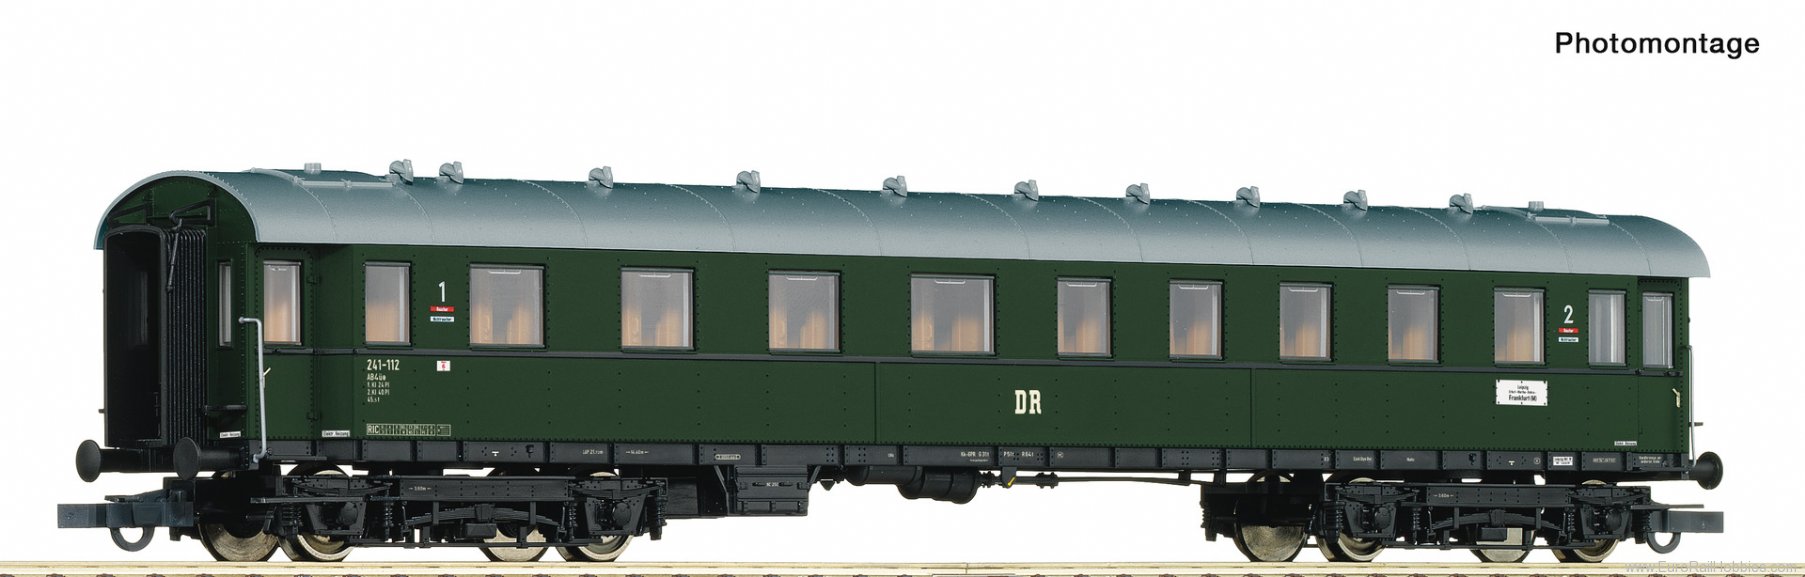 Roco 74861 1st/2nd class standard express train coach, D